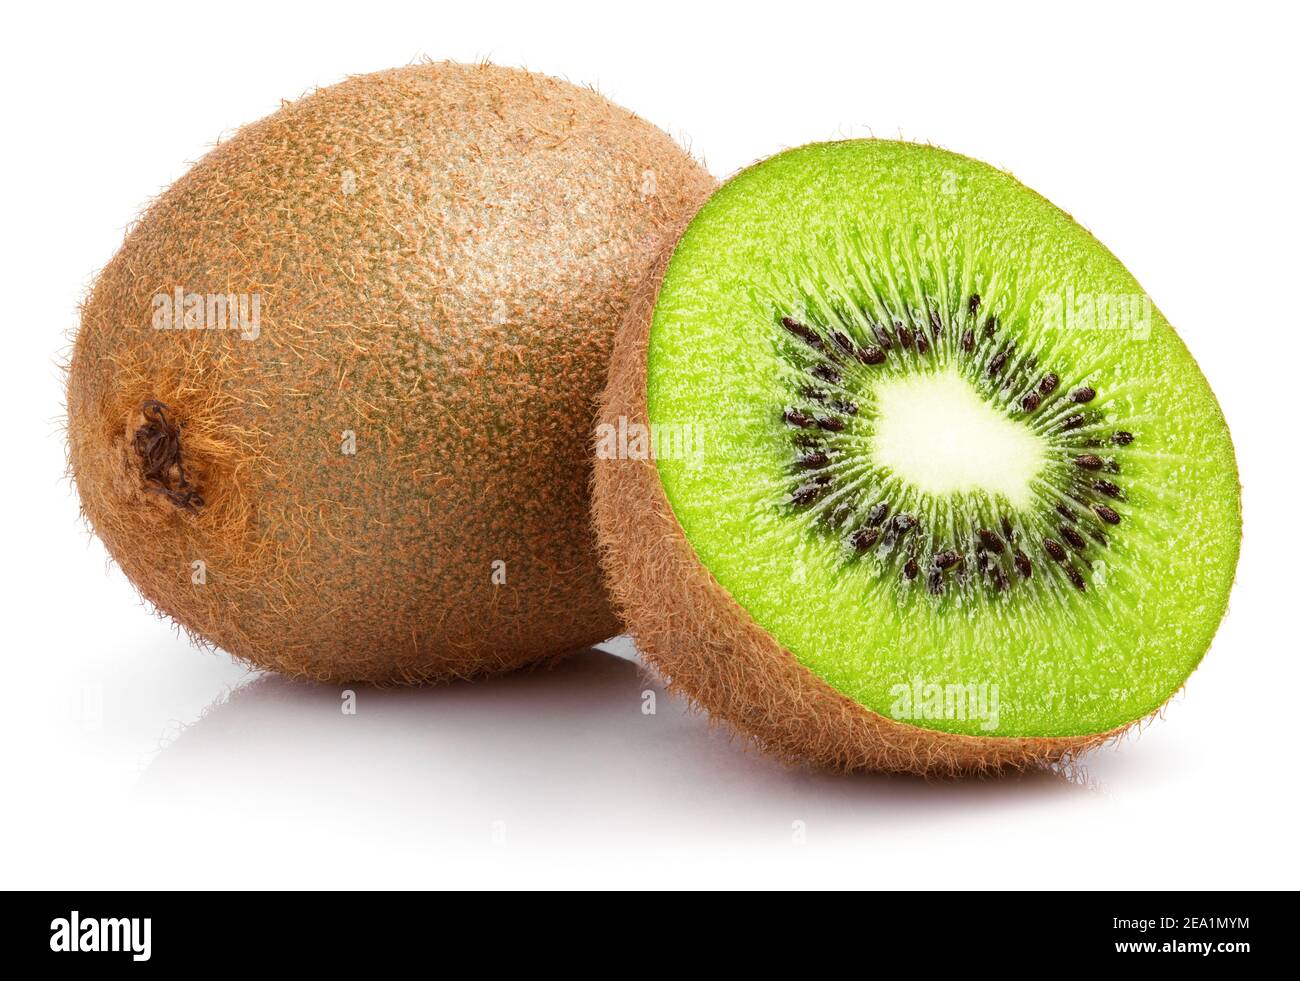 Ripe whole kiwi fruit and half kiwi fruit isolated on white background Stock Photo